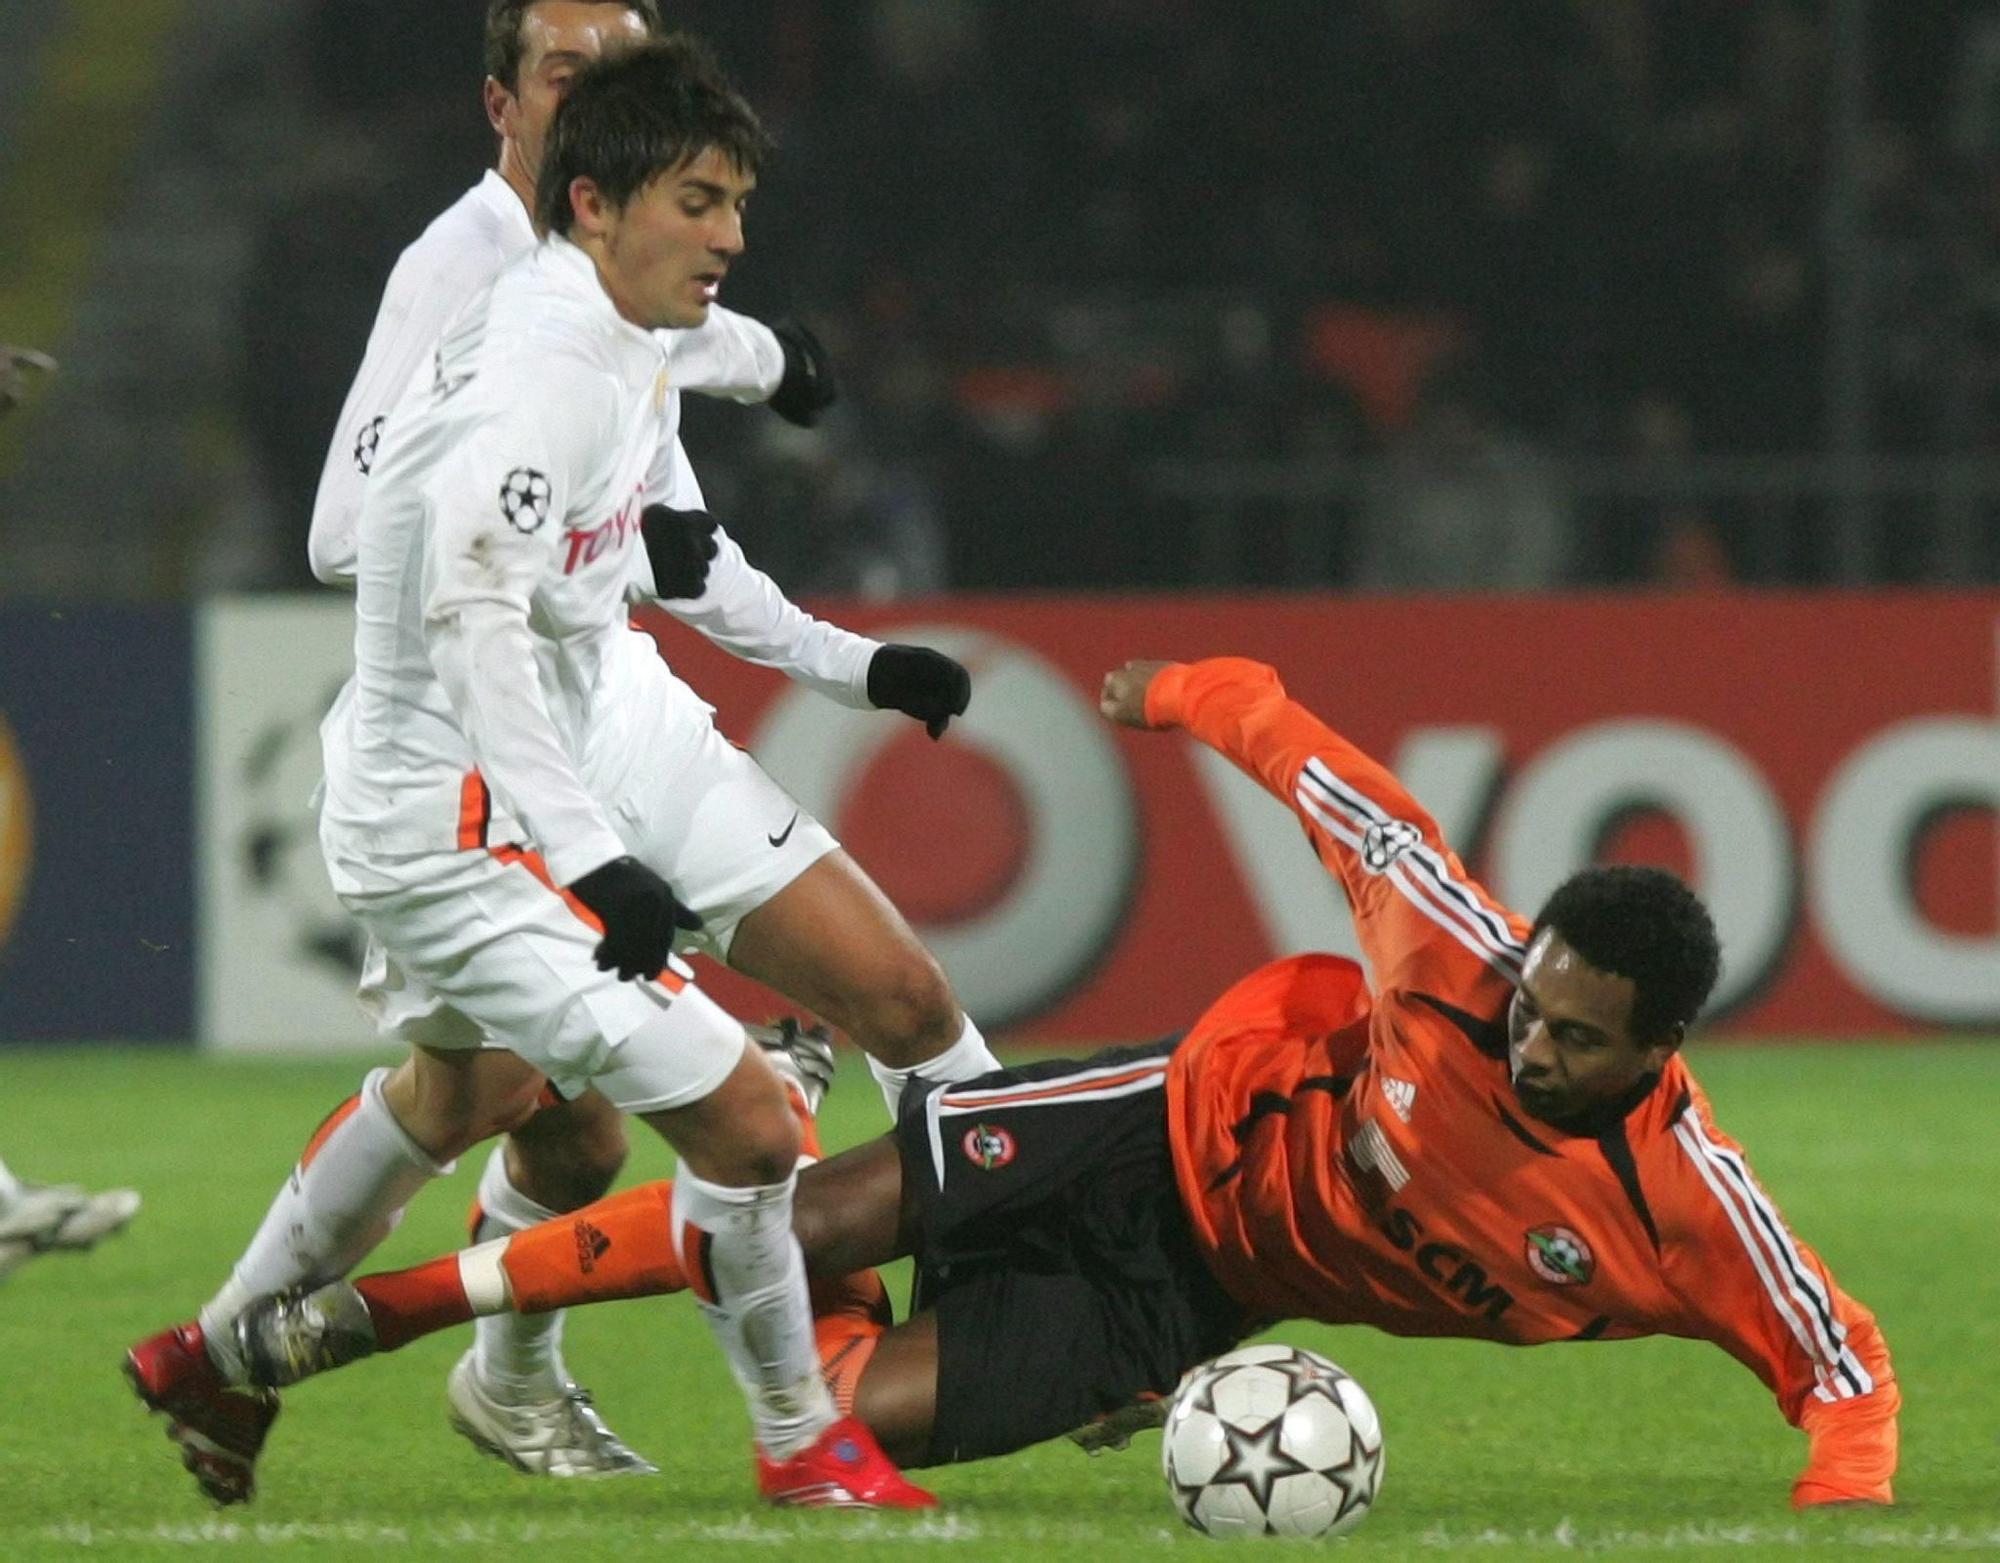 Recordamos la visita del Valencia CF a Ucrania en 2006 para jugar contra el  FC SHAKHTAR DONETSK